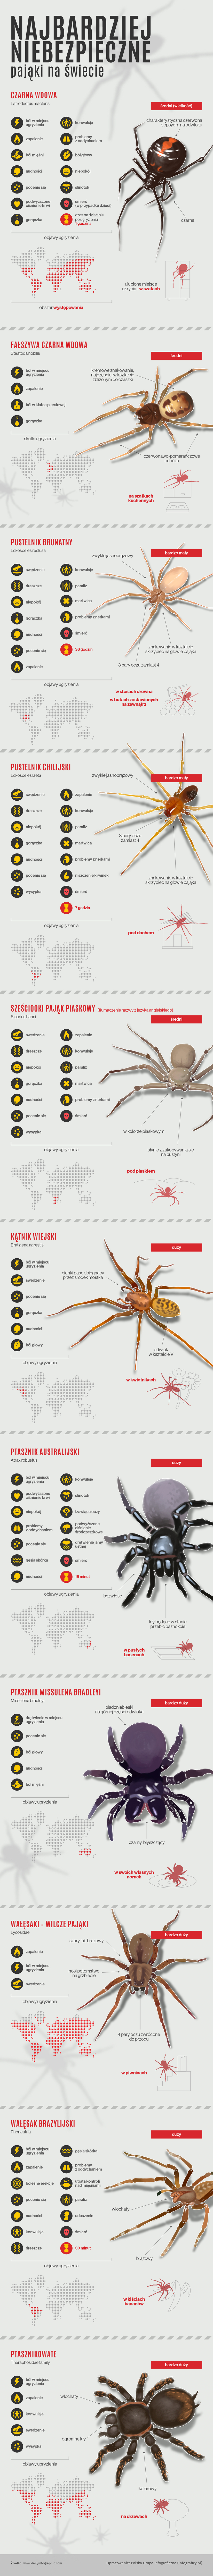 Najniebezpieczniejsze pająki na świecie